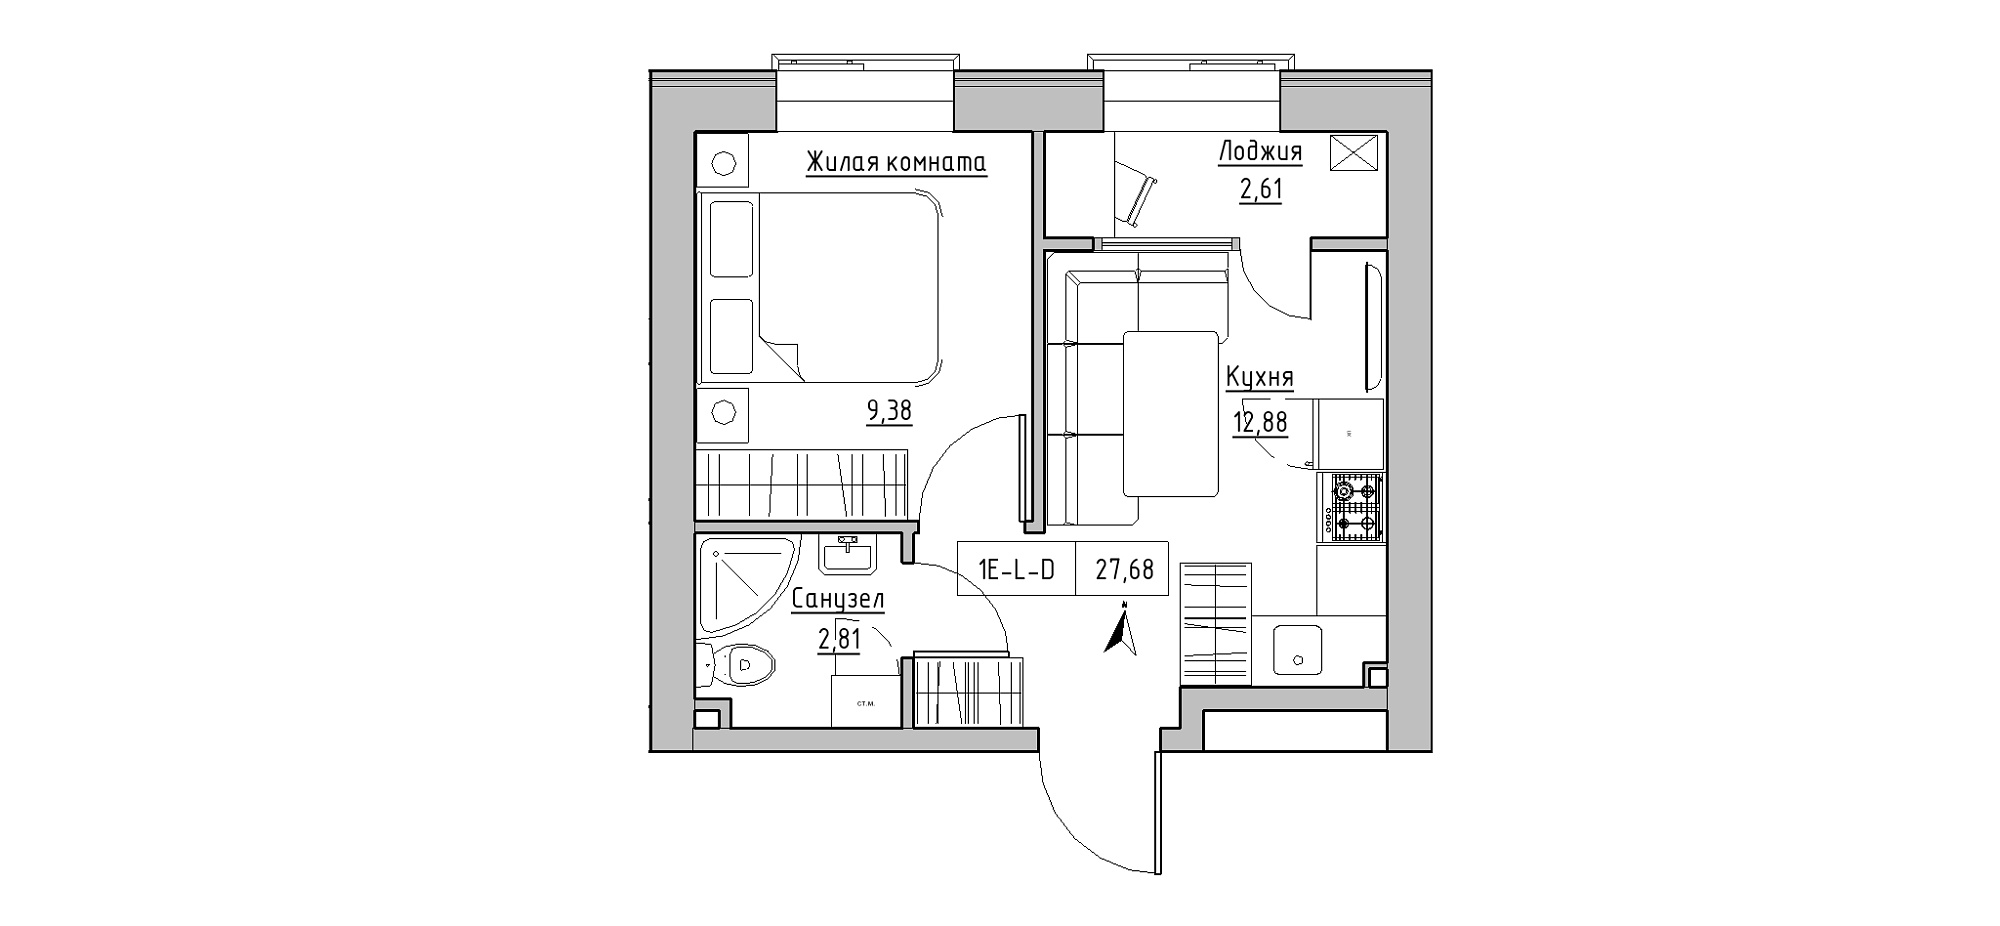 Планировка 1-к квартира площей 27.68м2, KS-020-04/0001.